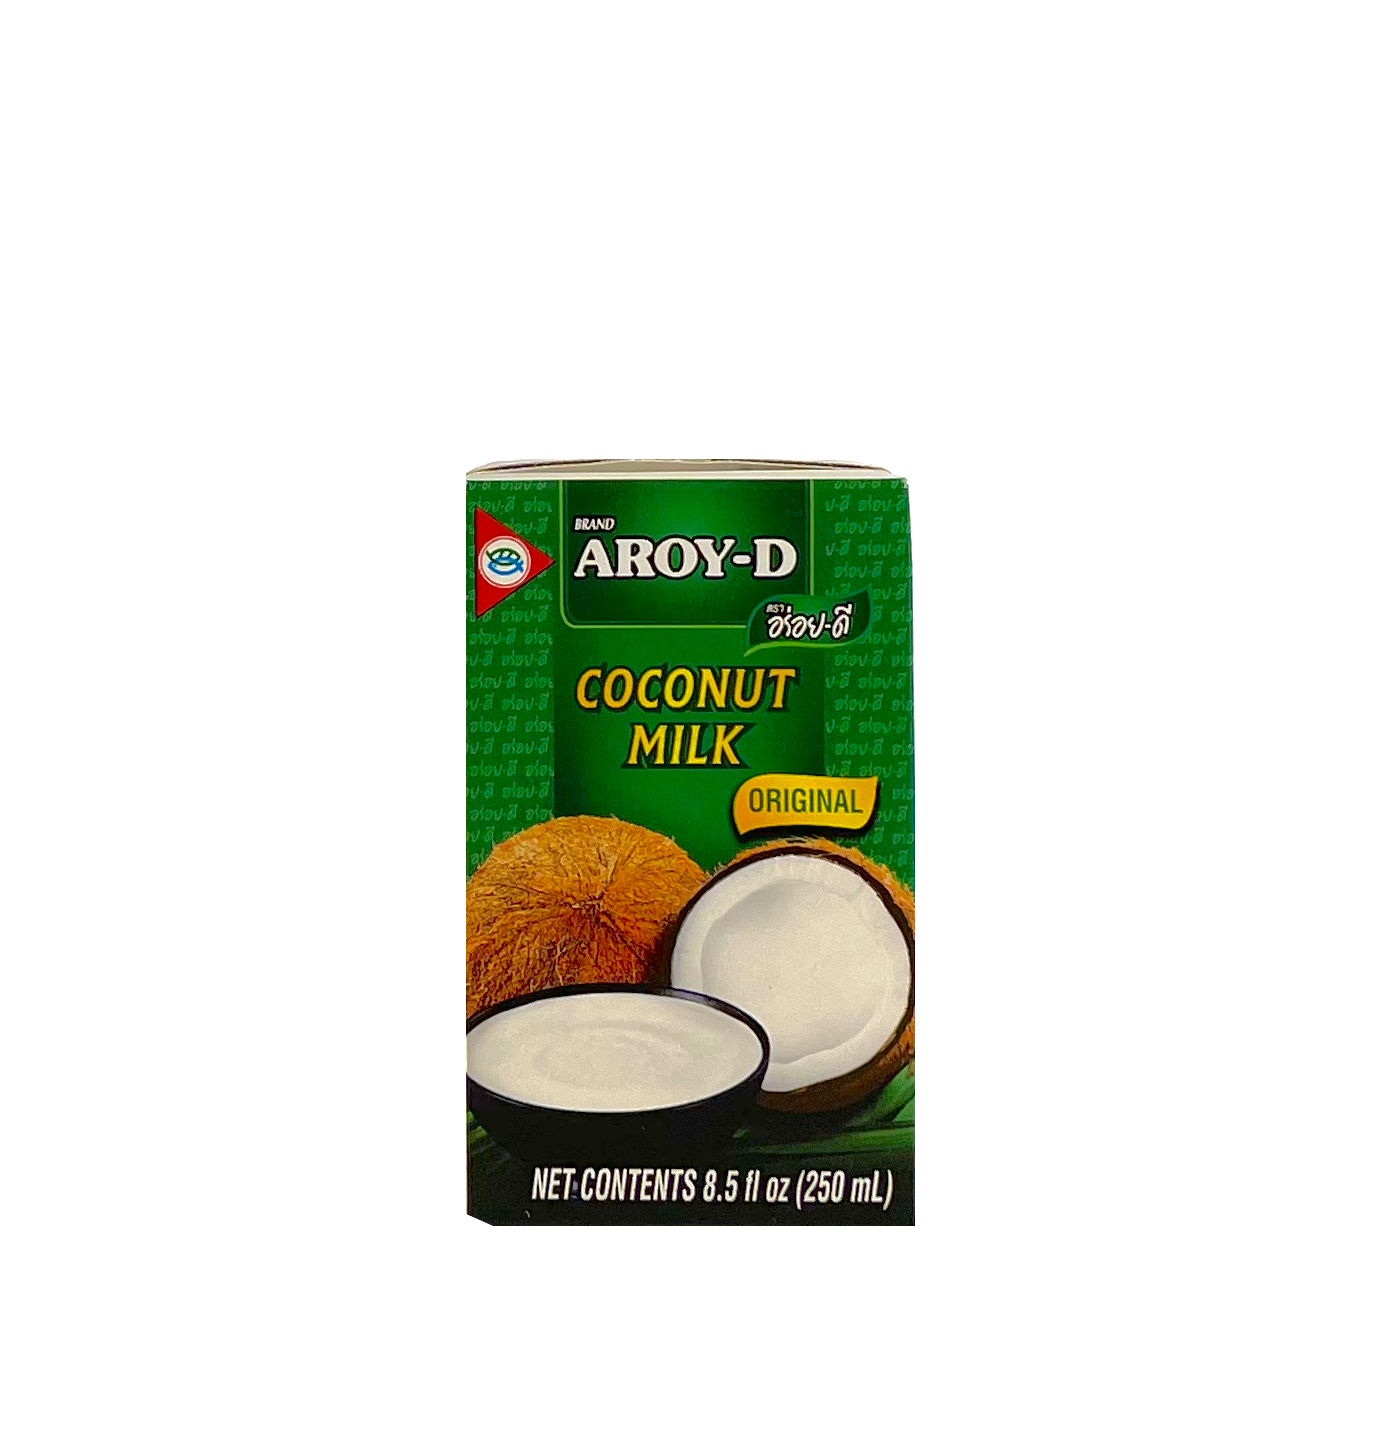 Coconut milk UHT 250ml Aroy-D Thailand